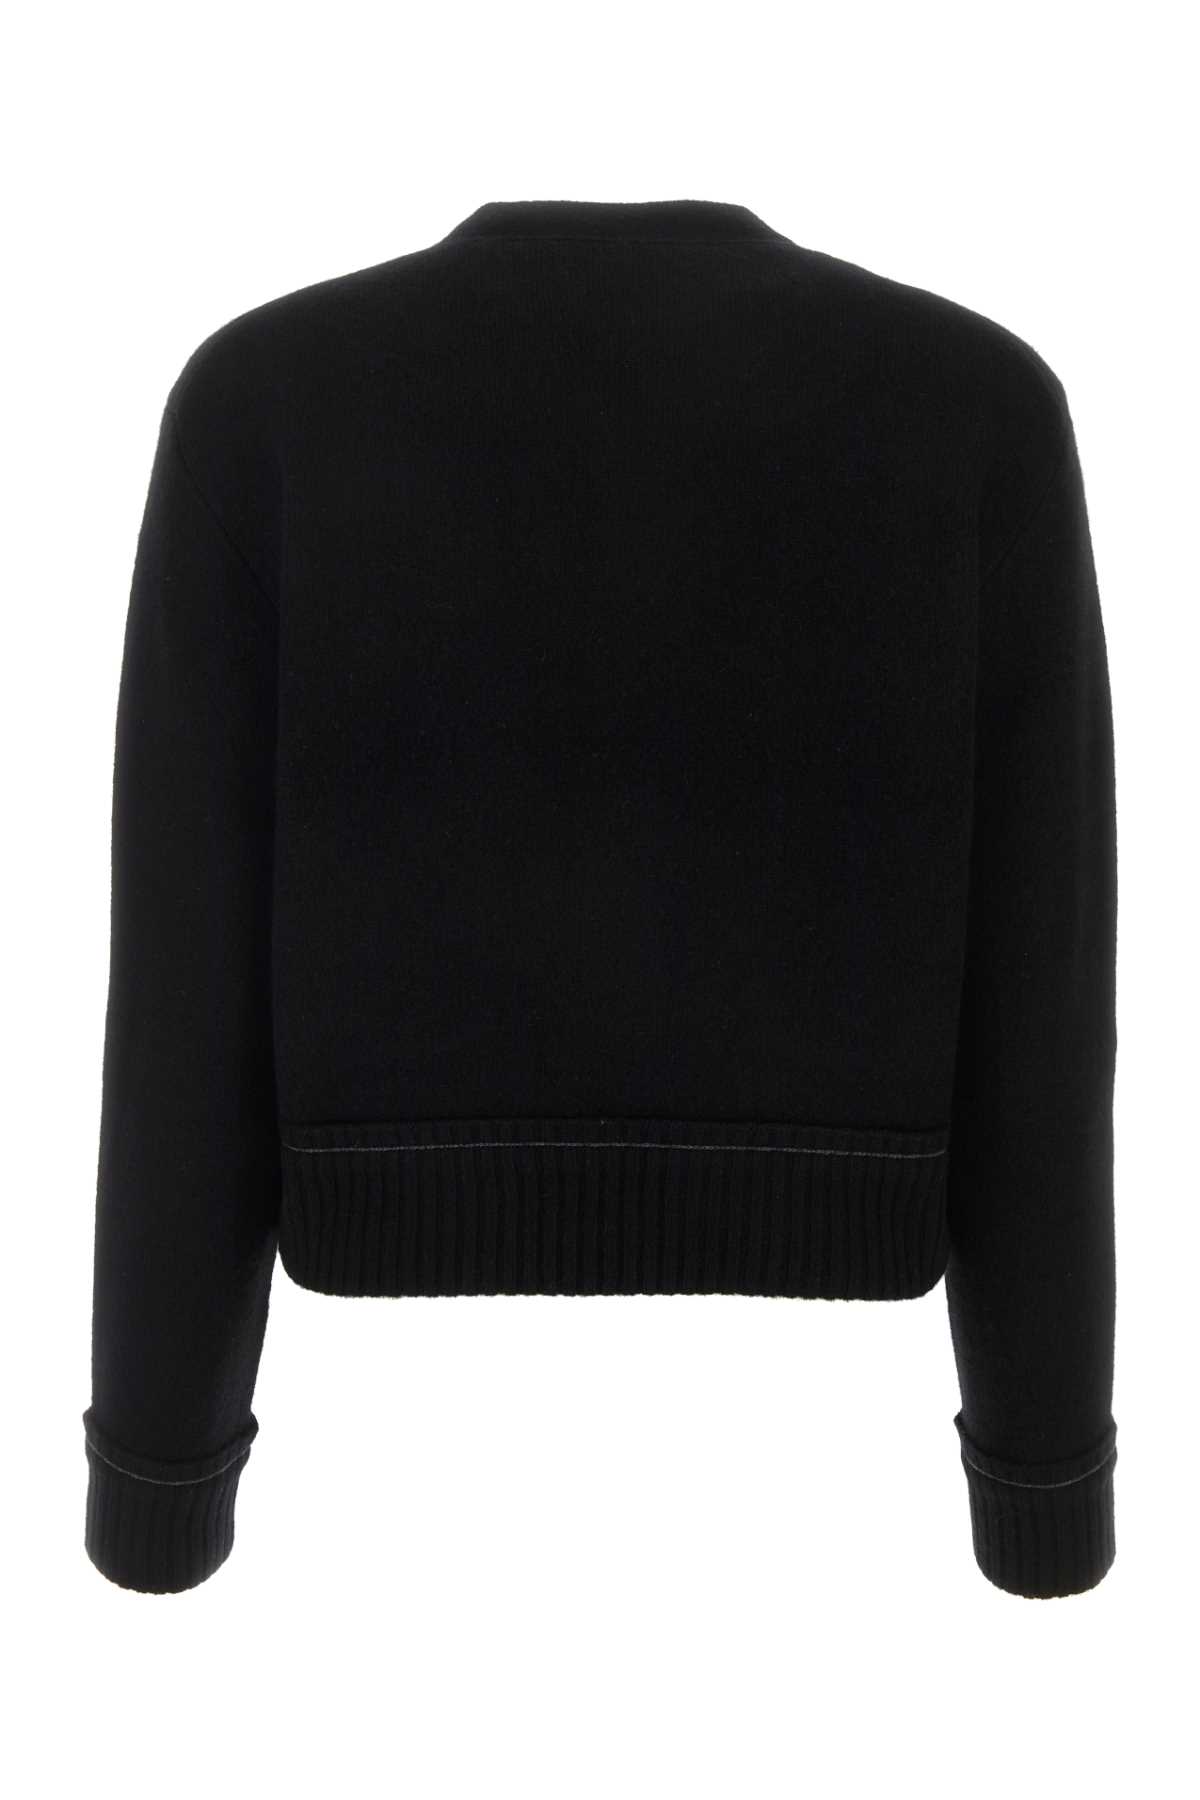 Shop Sacai Black Cashmere Blend Cashmere Knit Cardigan